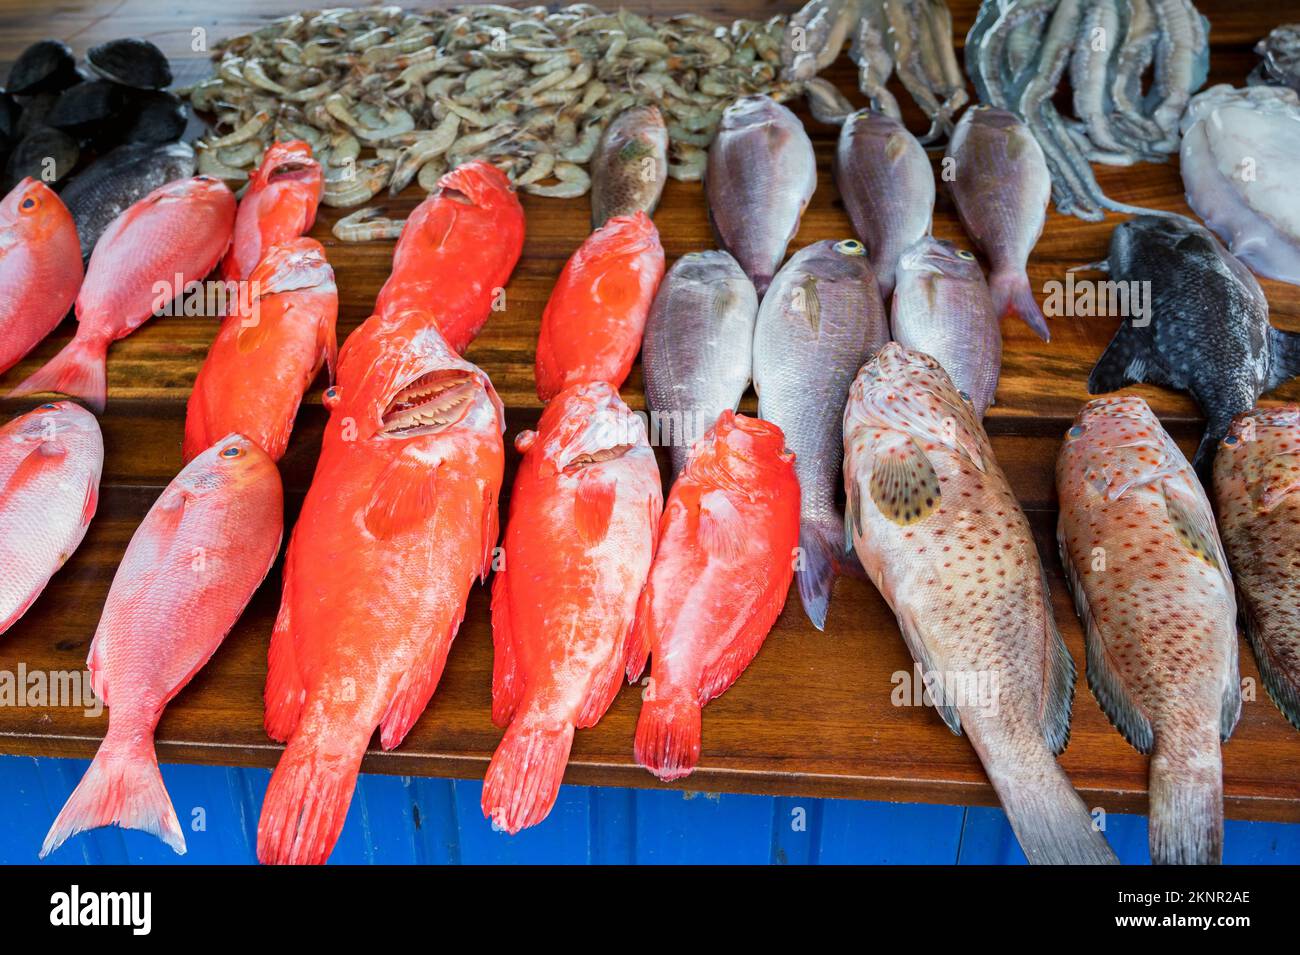 La mer des poissons et fruits de mer en Asie marché près de village des pêcheurs Banque D'Images